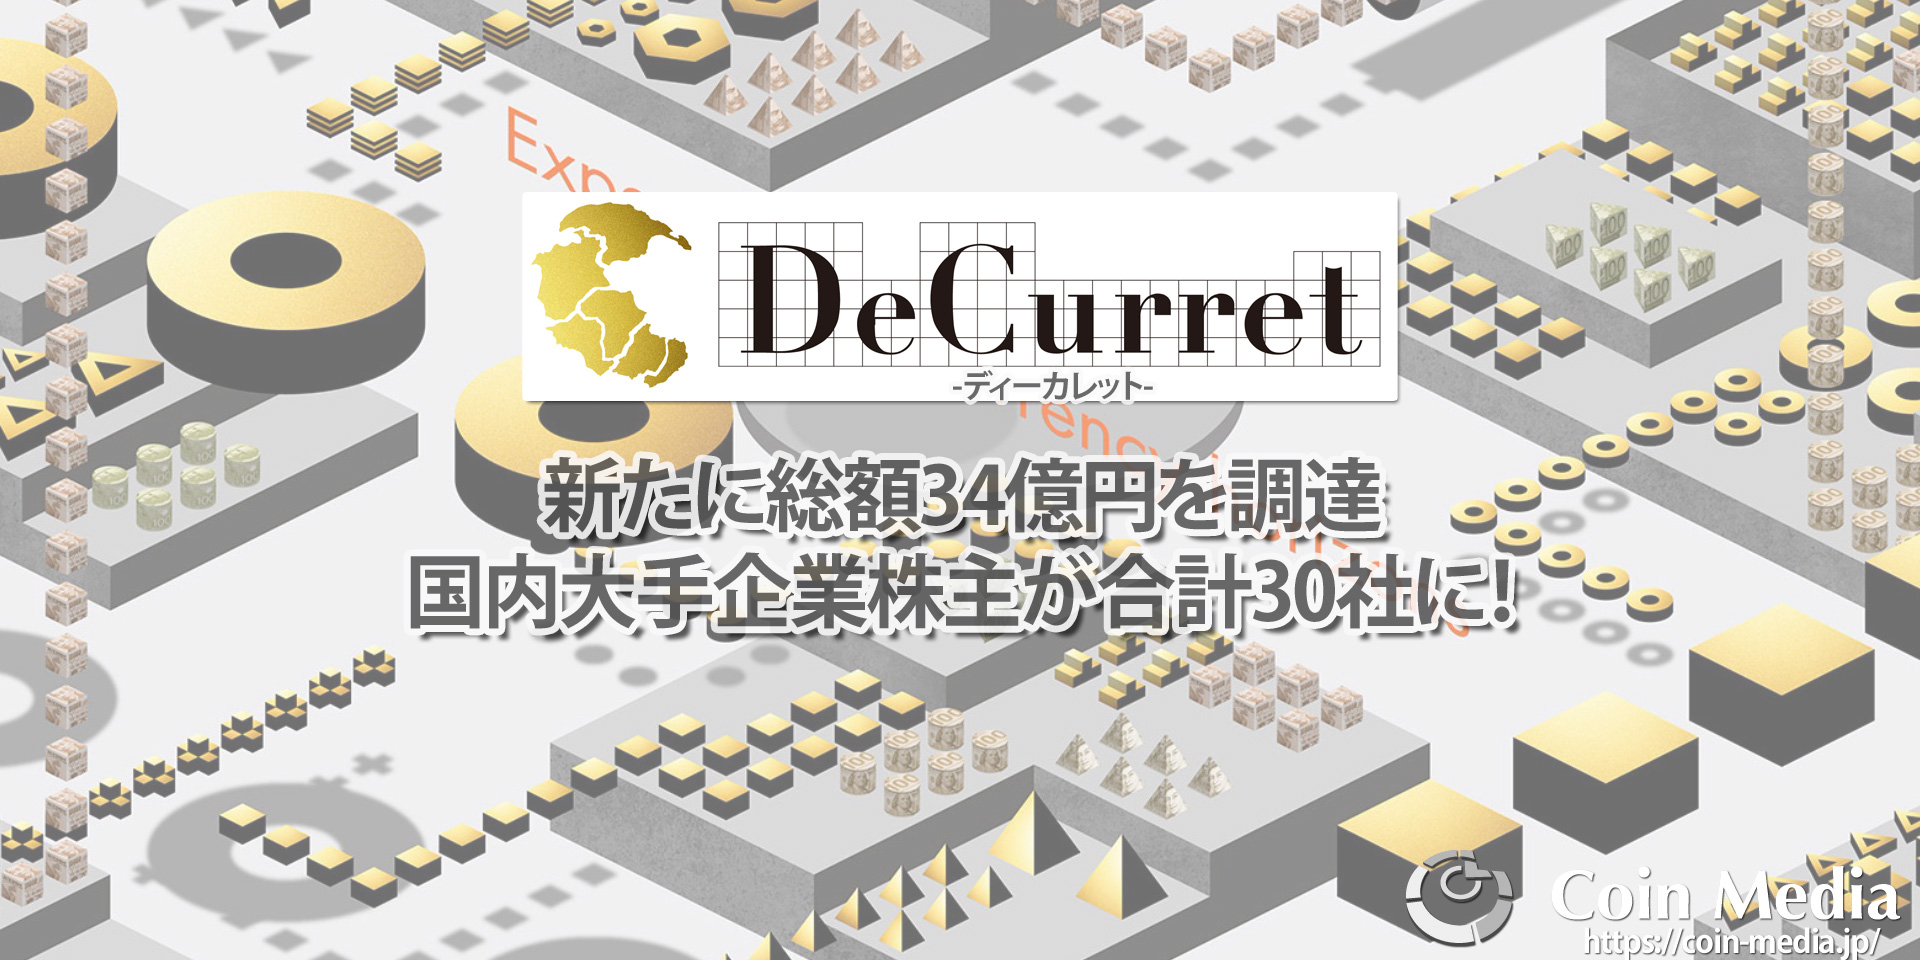 ディーカレット(DeCurret)が新たに総額34億円を調達。国内大手企業株主が合計30社に！